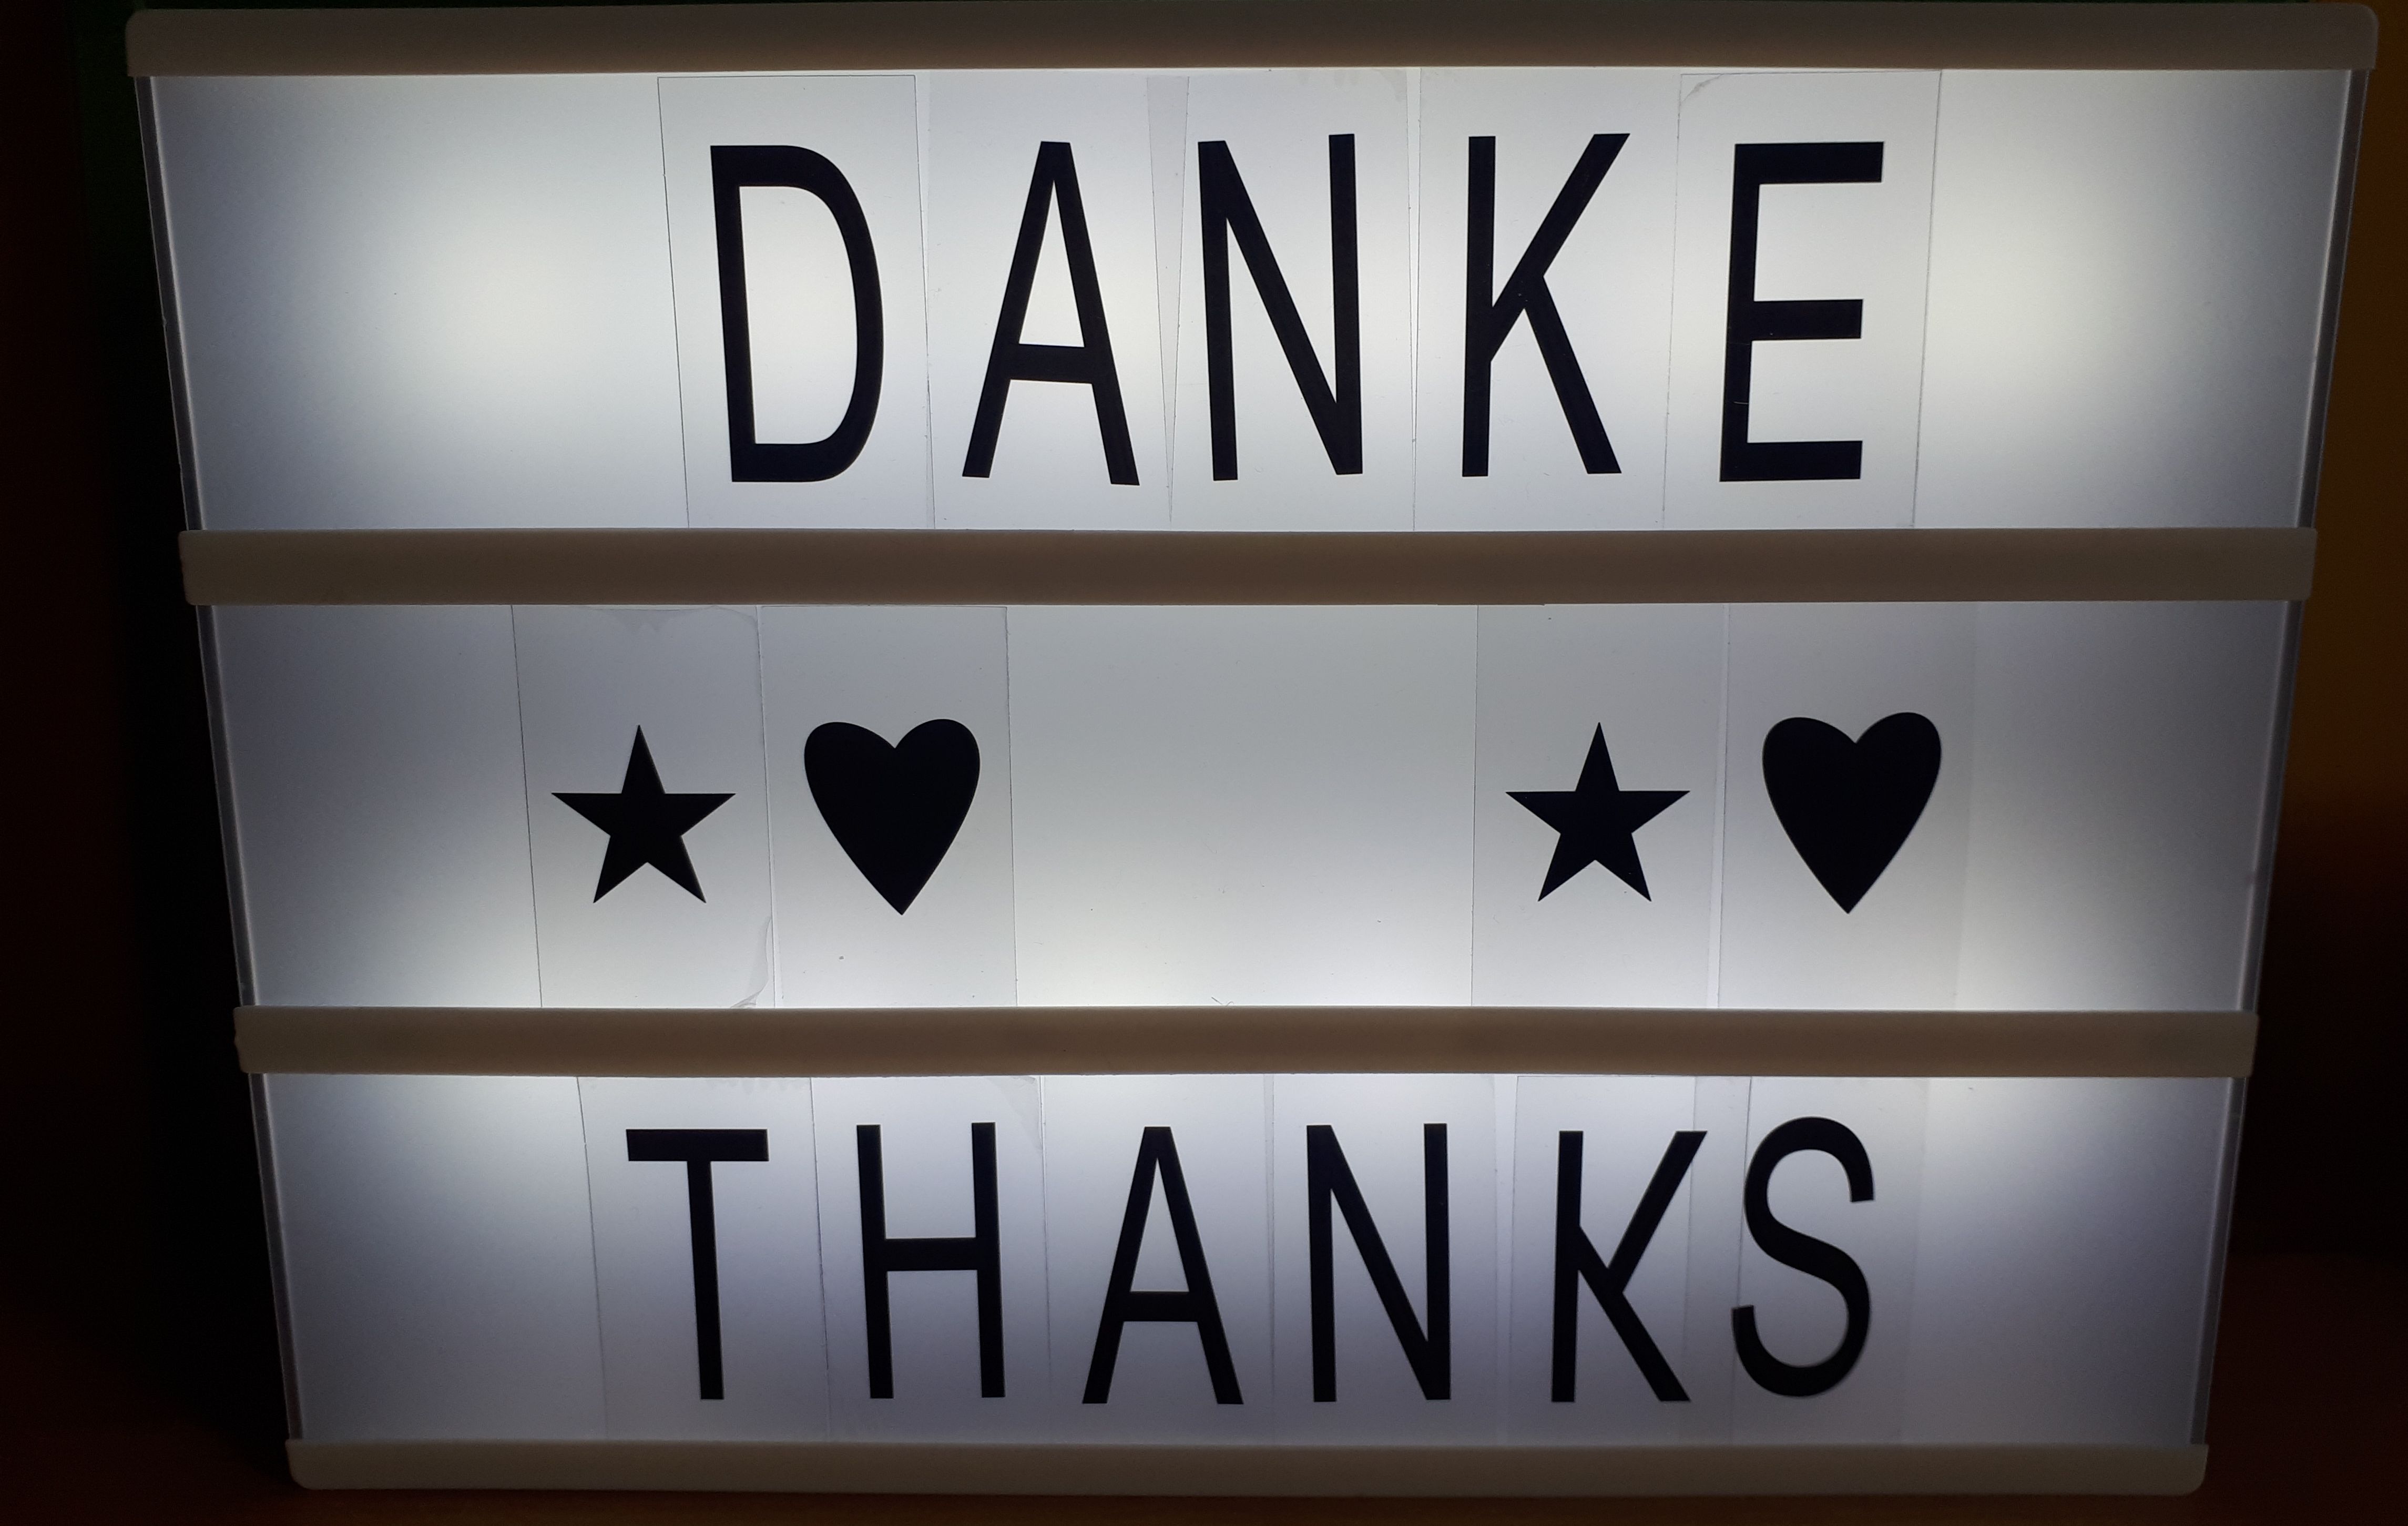 Auf einer Leuchttafel steht "Danke" und "Thanks".